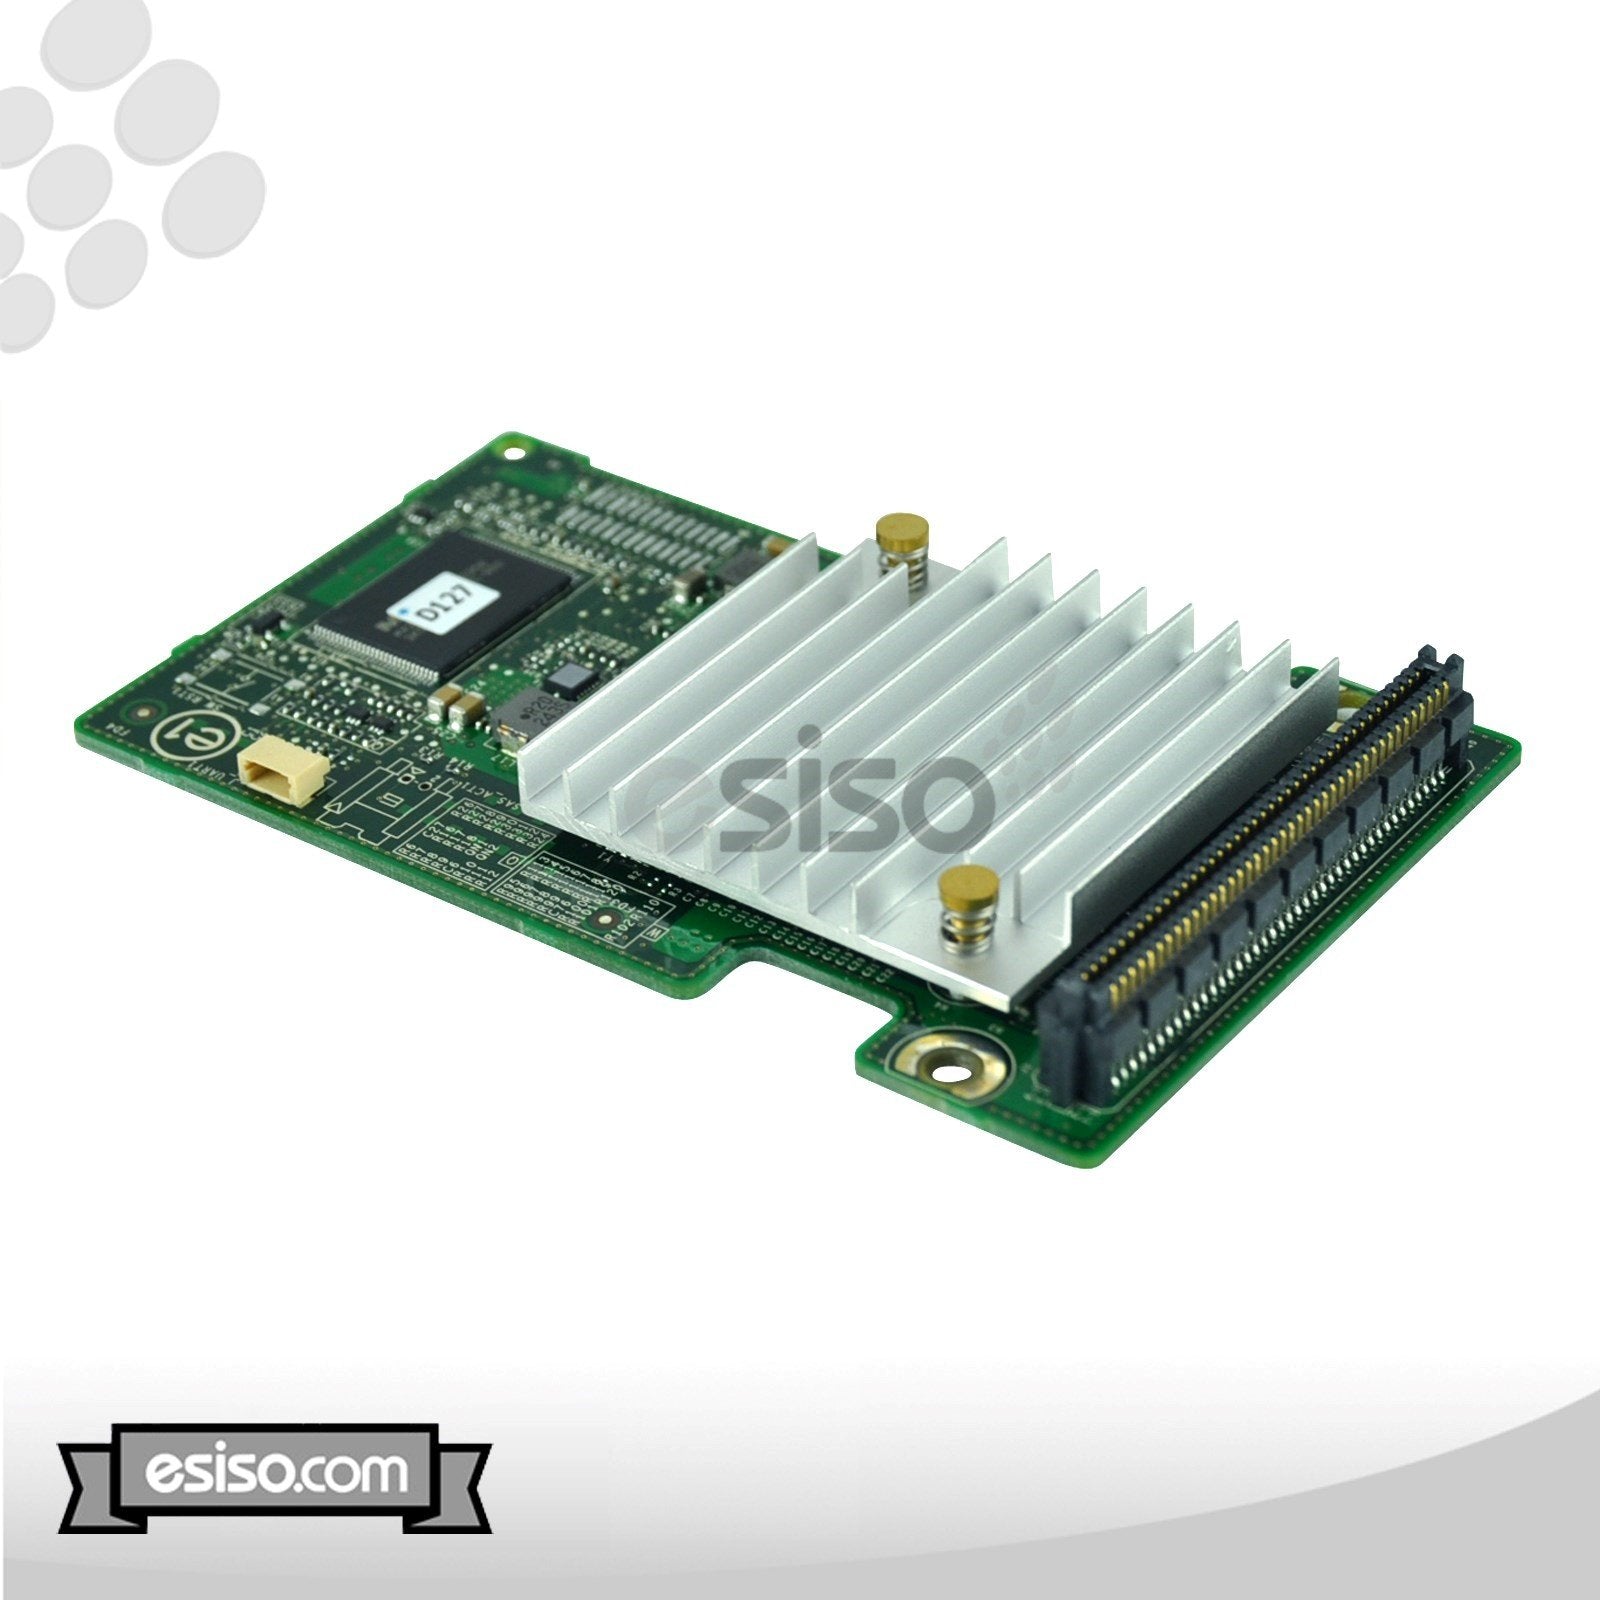 LOT OF 2 69C8J 069C8J DELL PERC H310 8-PORT 6GB SAS MINI BLADE PCIE RAID CONTROLLER